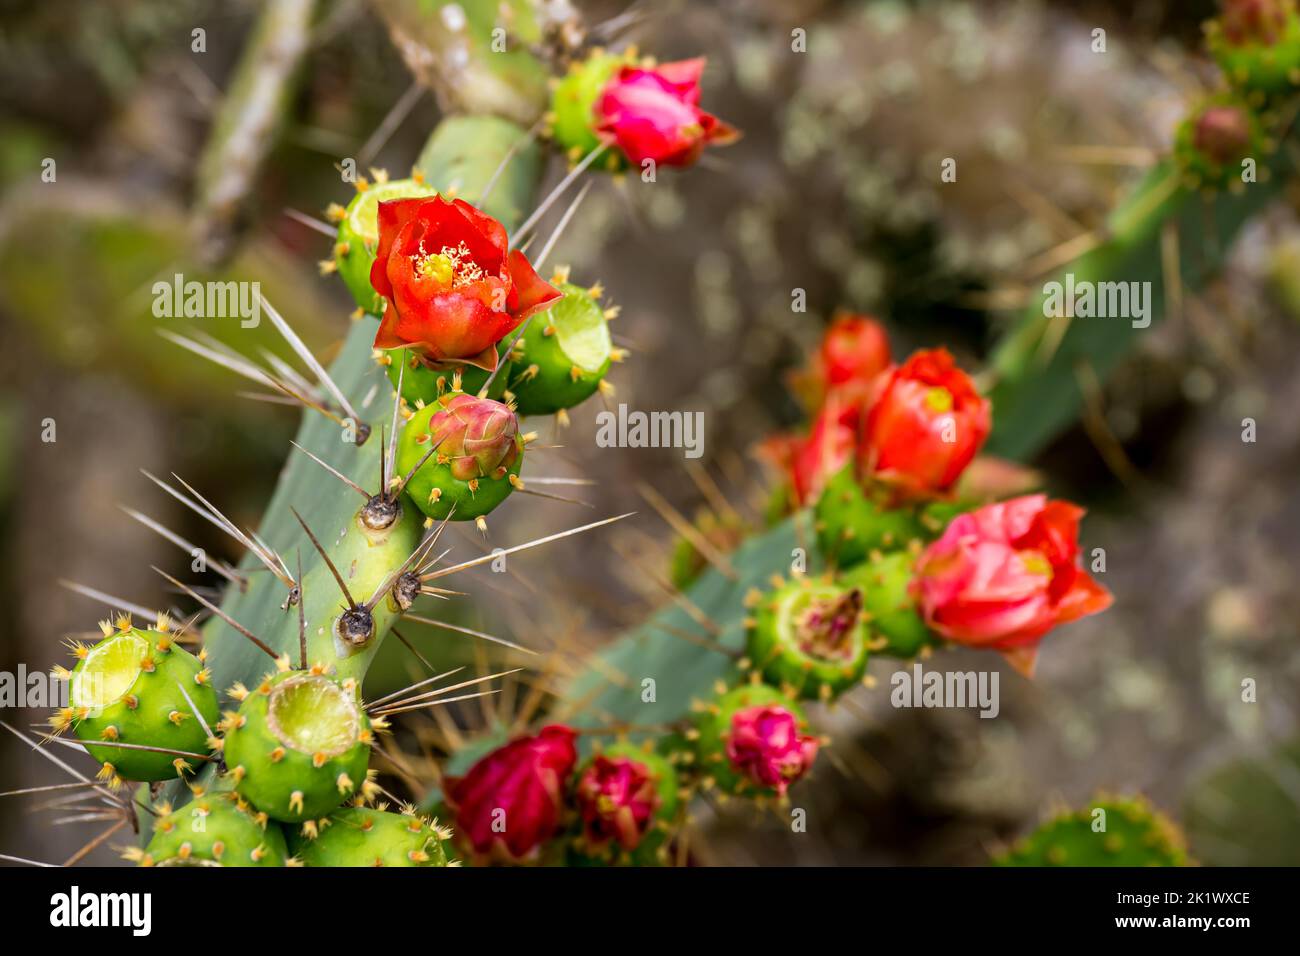 Gros plan de la fleur de cactus de poire pickly (lat. Opuntia) avec des pétales rouges et des étamines jaunes poussant à côté des fruits de poire pickly vert non mûrs et des gros épis. Banque D'Images